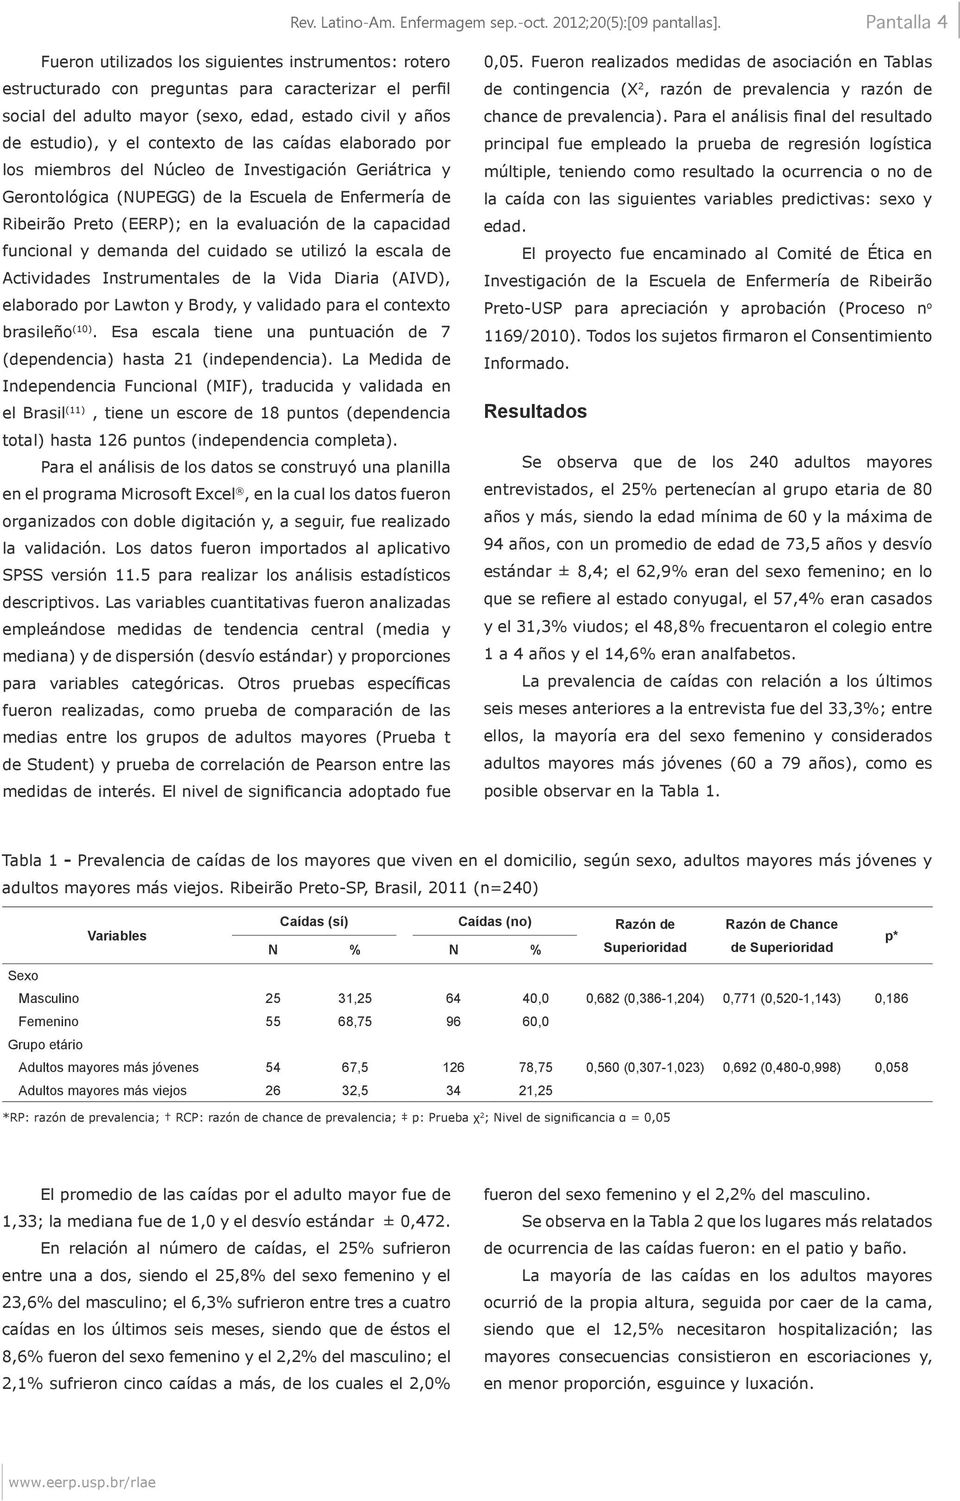 contexto de las caídas elaborado por los miembros del Núcleo de Investigación Geriátrica y Gerontológica (NUPEGG) de la Escuela de Enfermería de Ribeirão Preto (EERP); en la evaluación de la